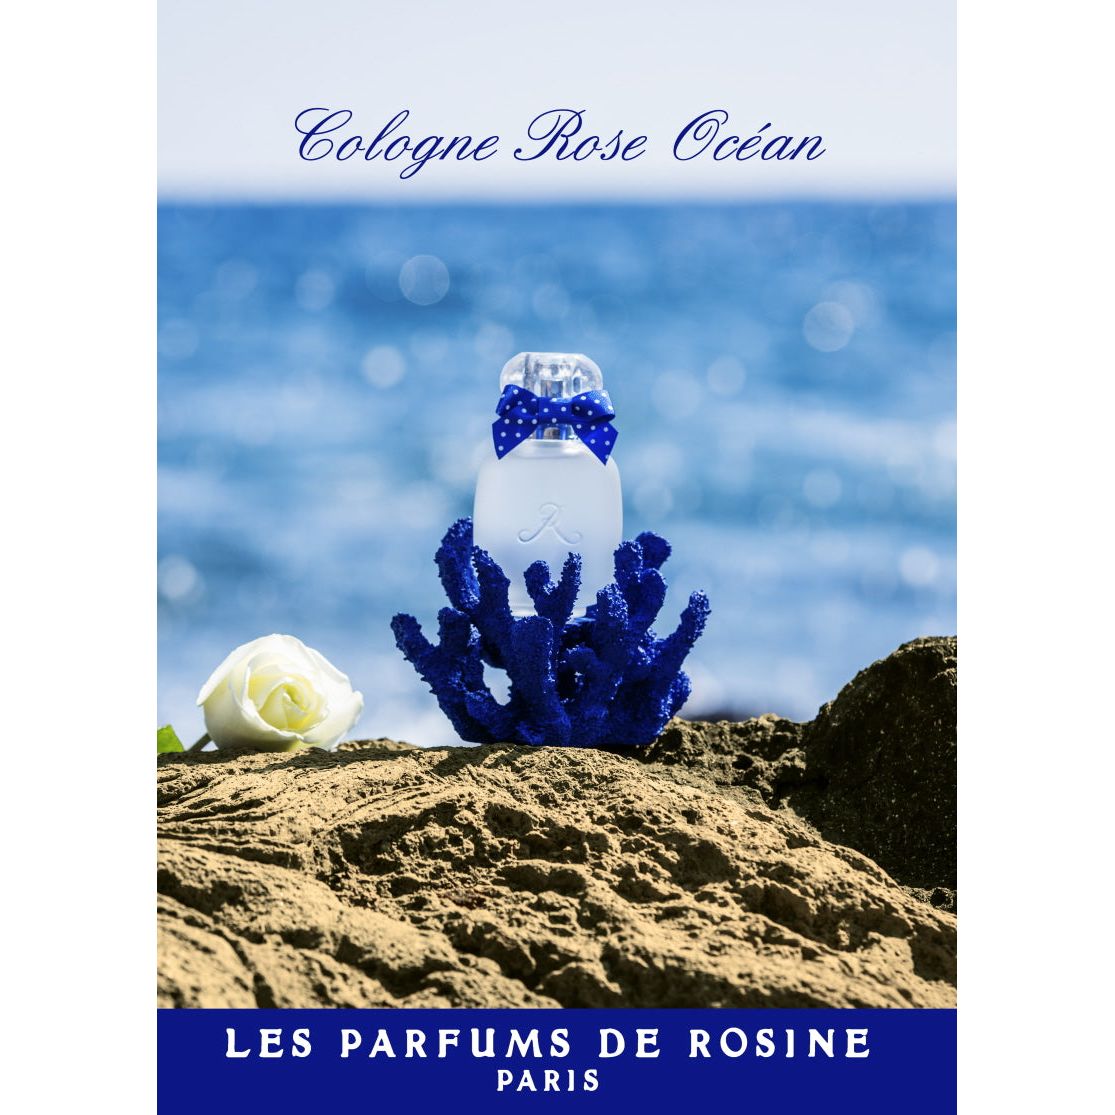 Les Parfums de Rosine - Cologne Rose Ocean - Eau de Cologne